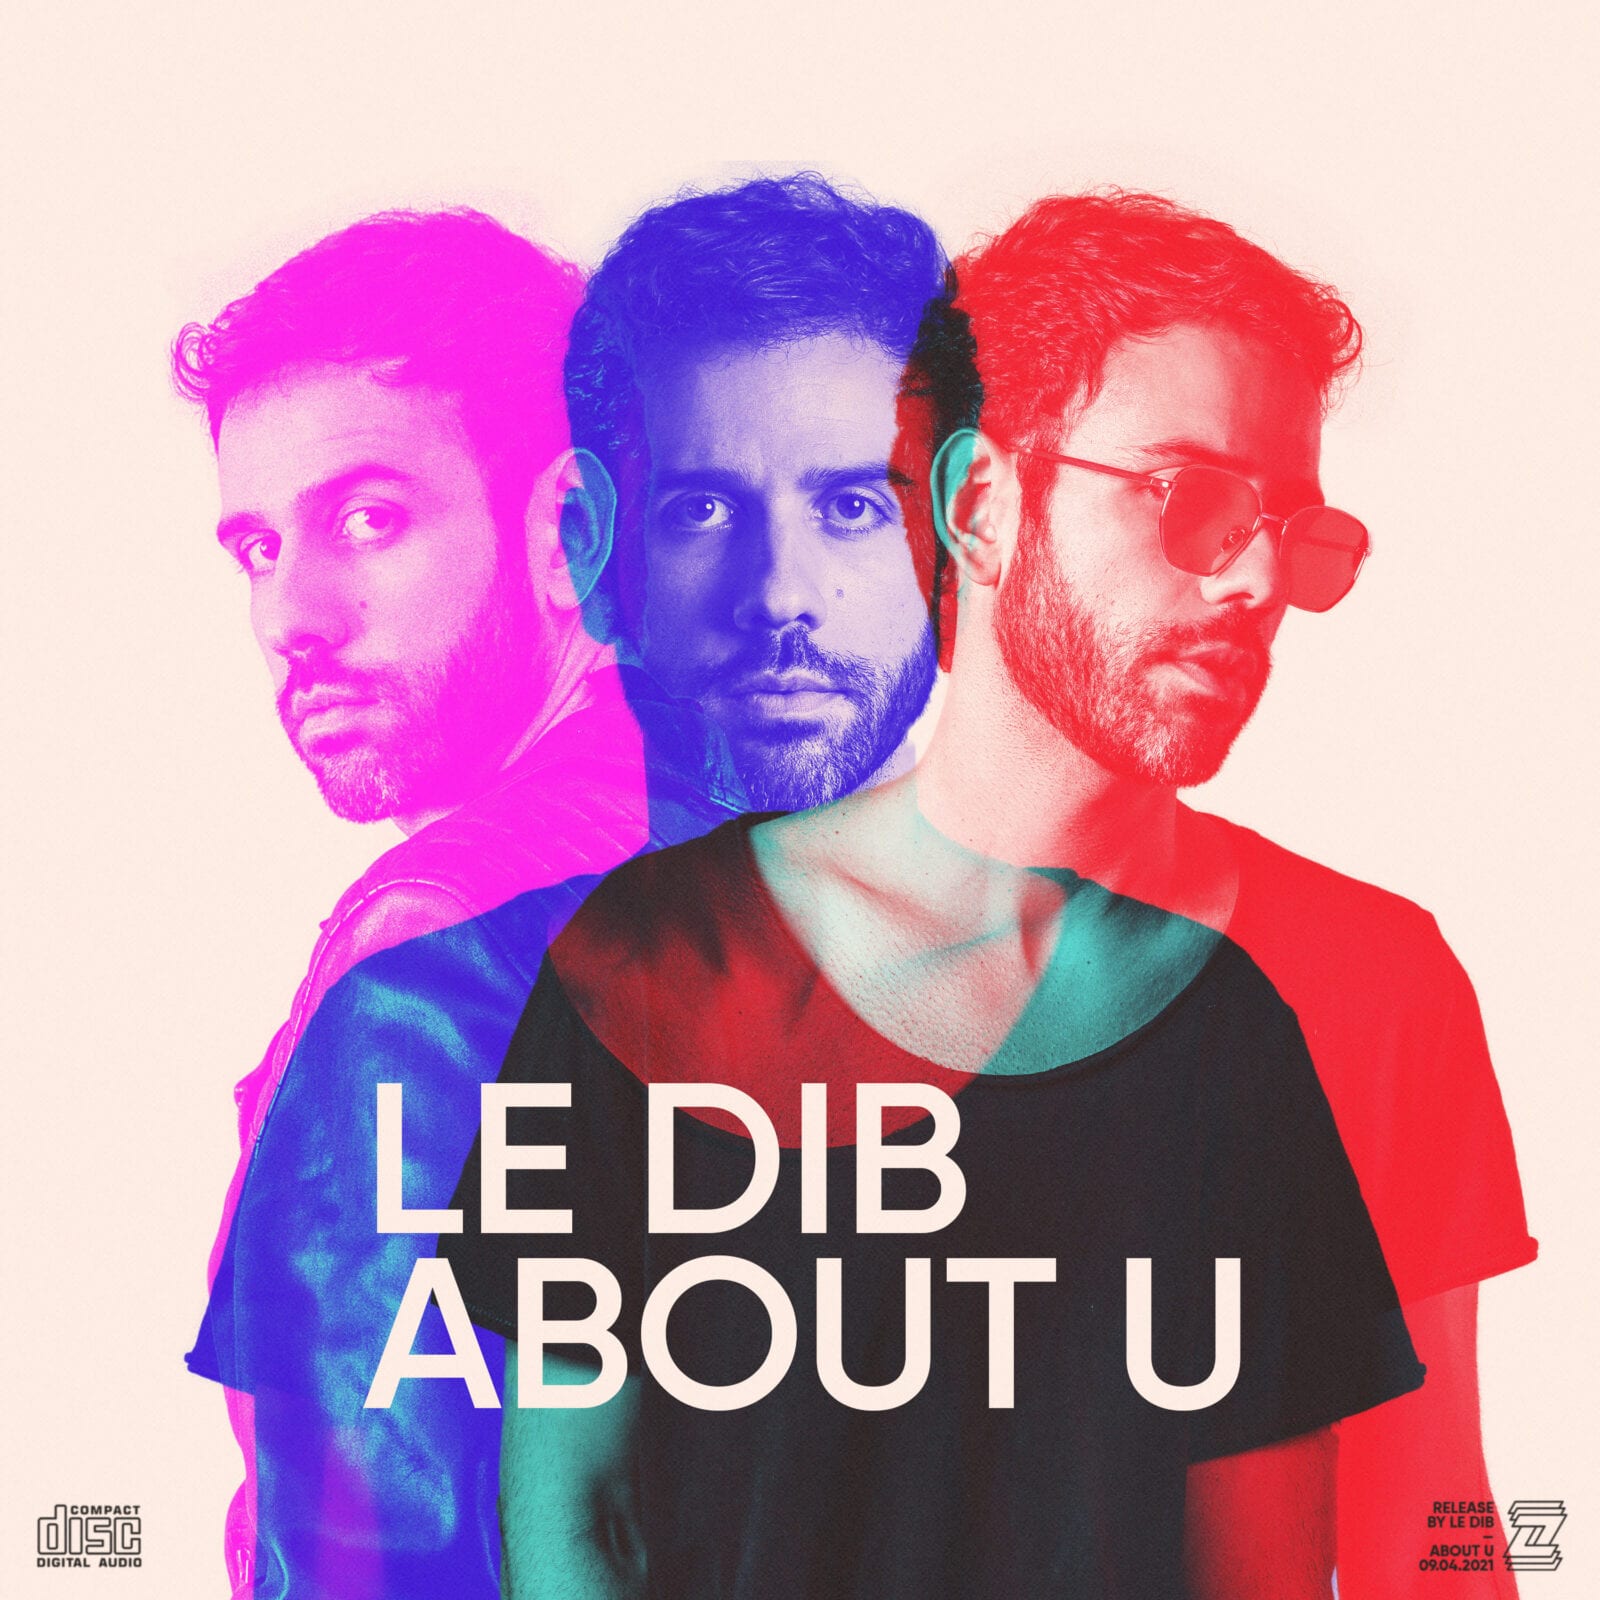 Le Dib apresenta nova track About U pela Sony Music, com referências dos anos 80